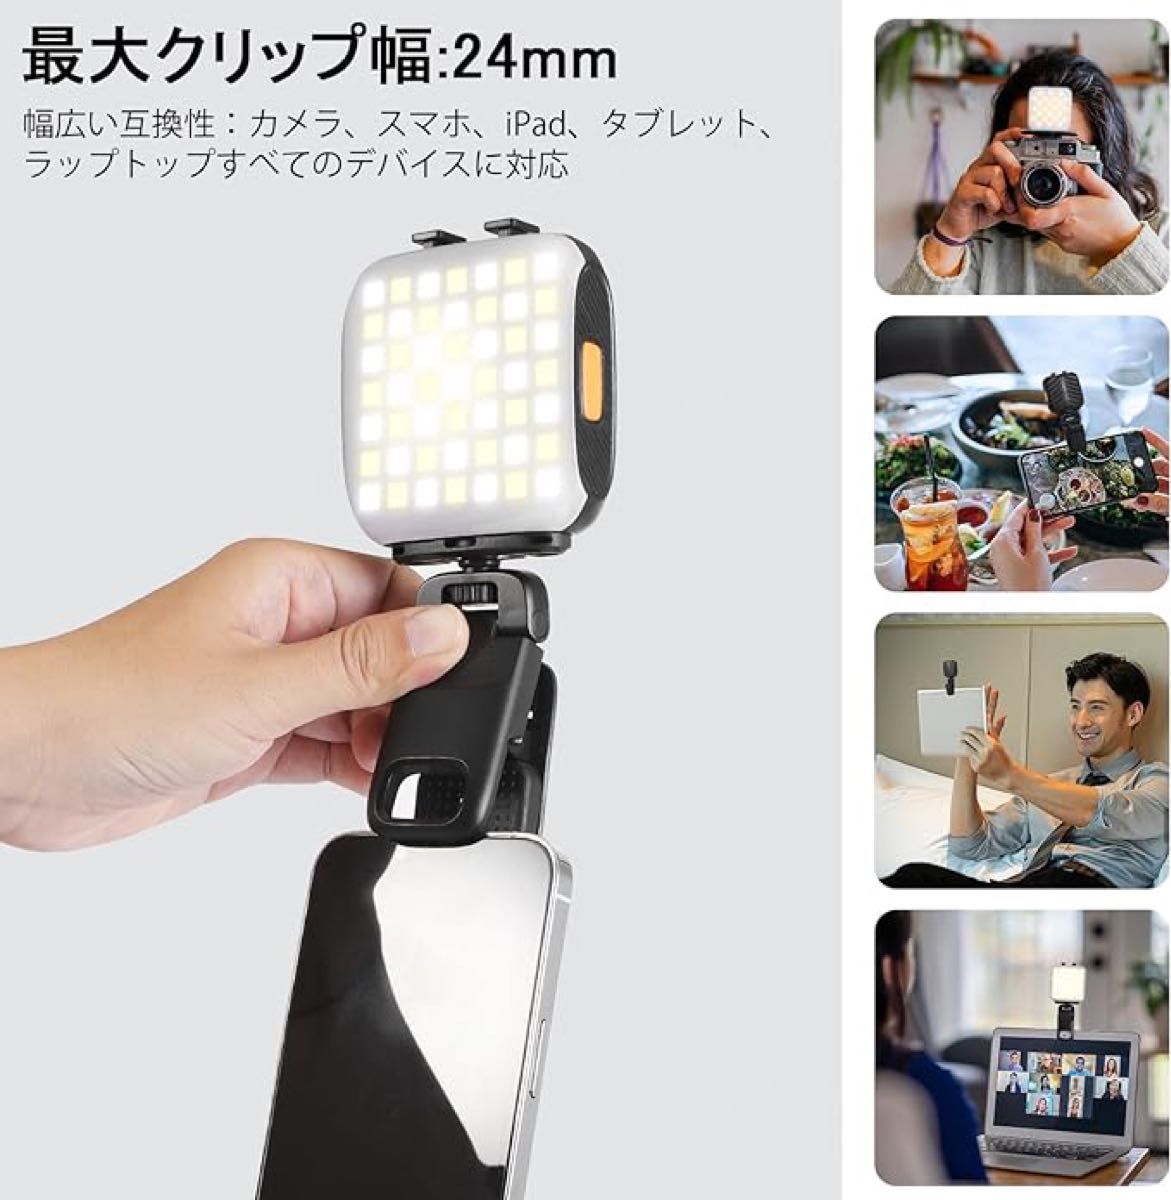 ビデオライト LED自撮りライトミニ 撮影用ライト USB充電式 自撮りライト